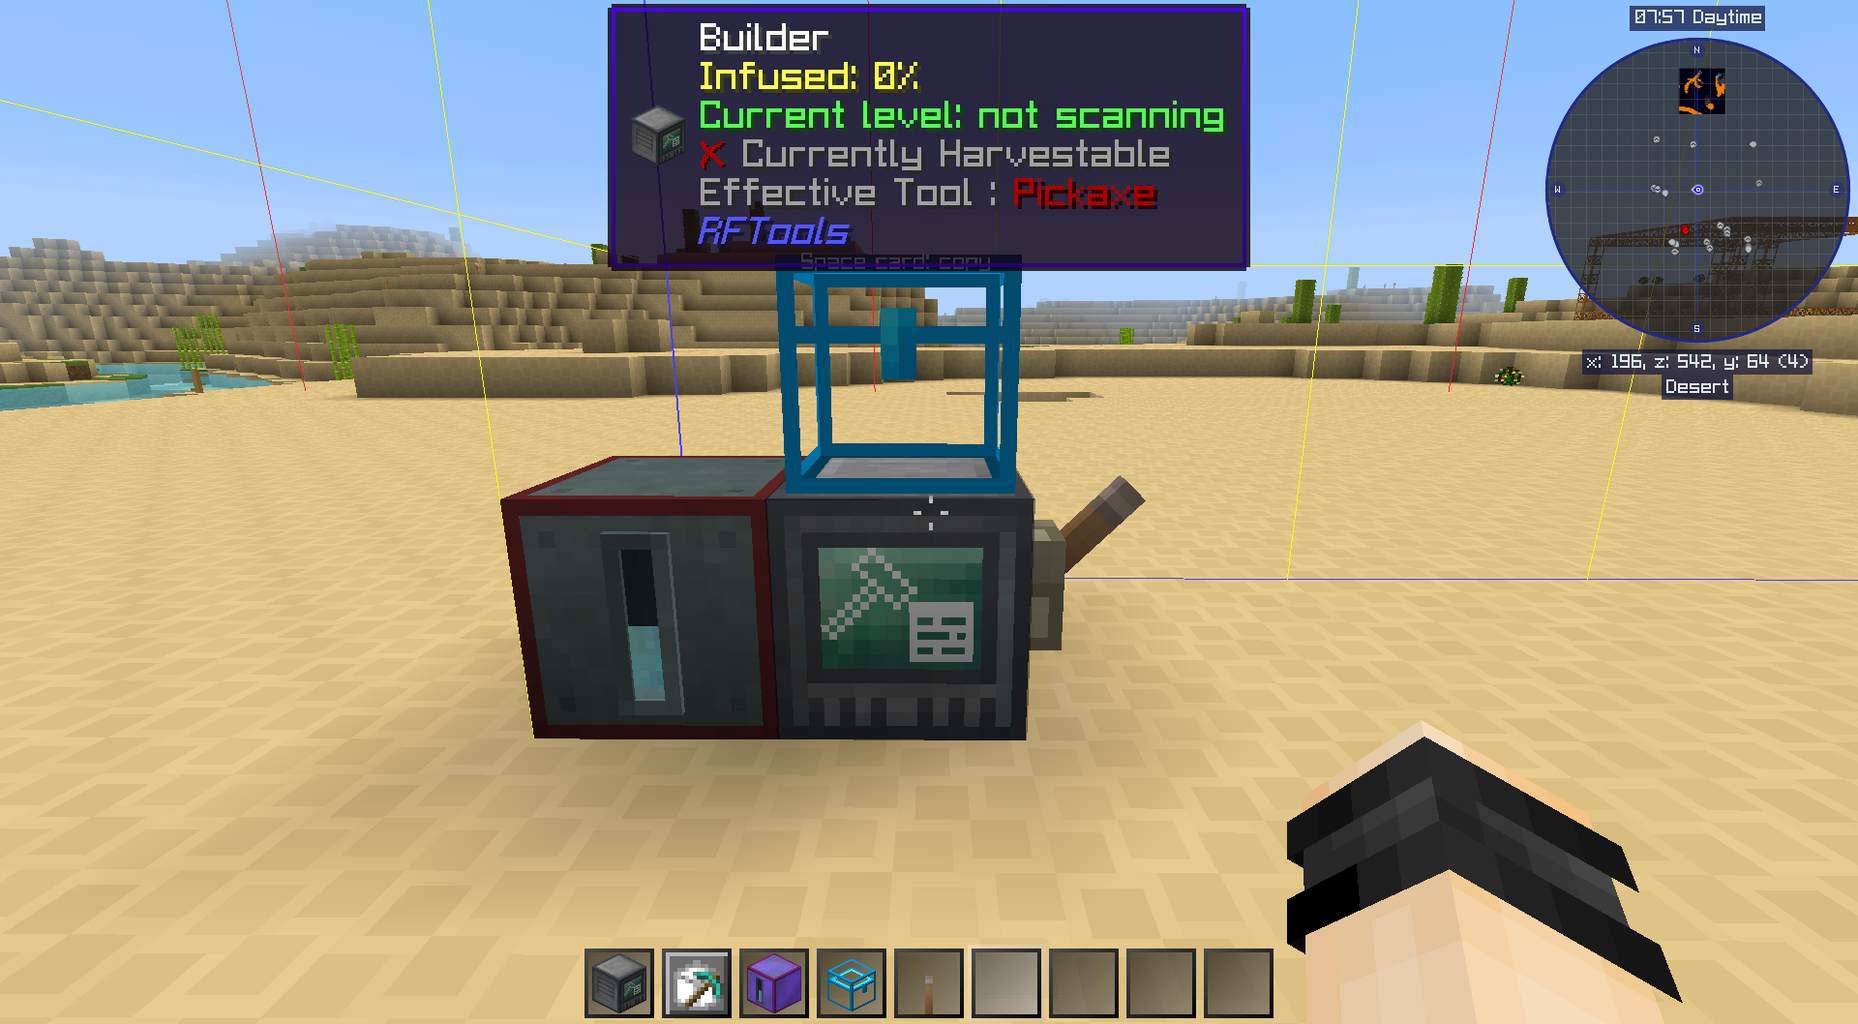 マインクラフト 工業化modで出来る事 Part 2 Quarry 露天掘り機 スティーブの工業化mod日記 Minecraft